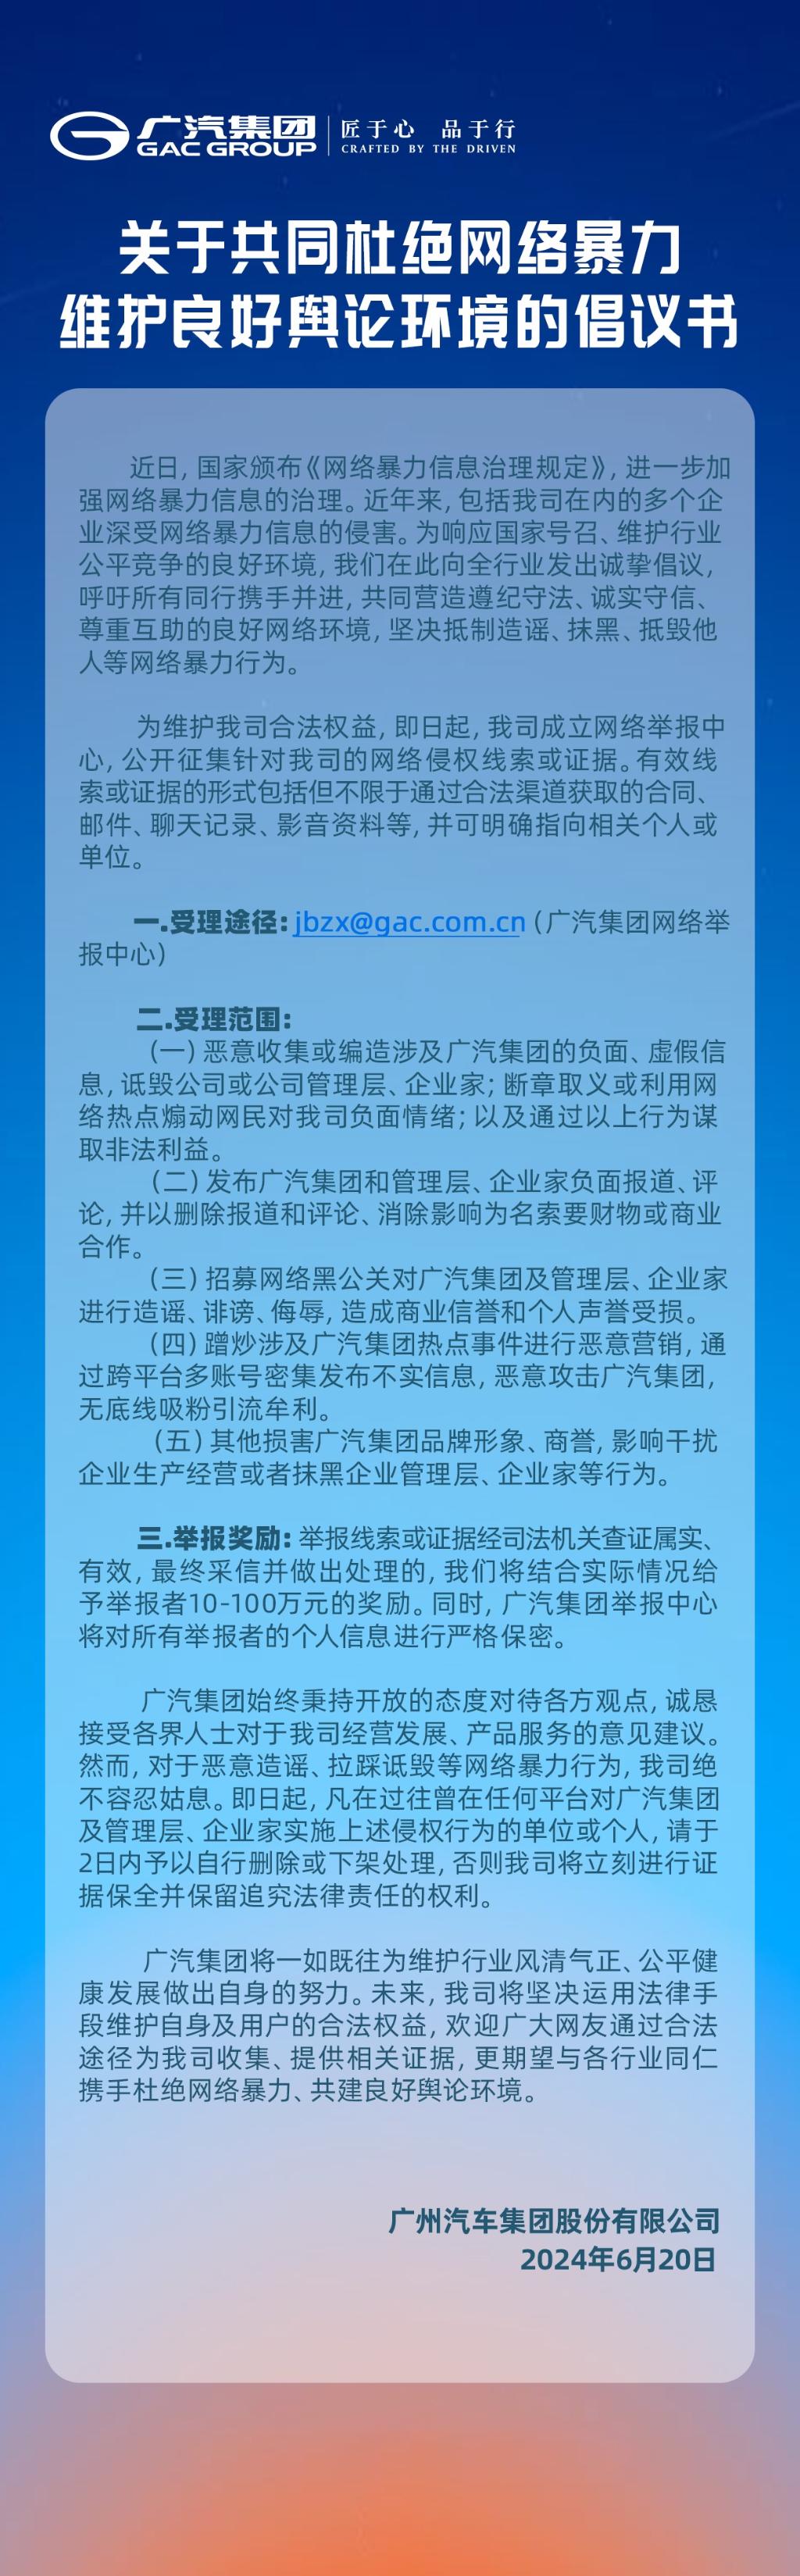 广汽集团成立网络举报中心